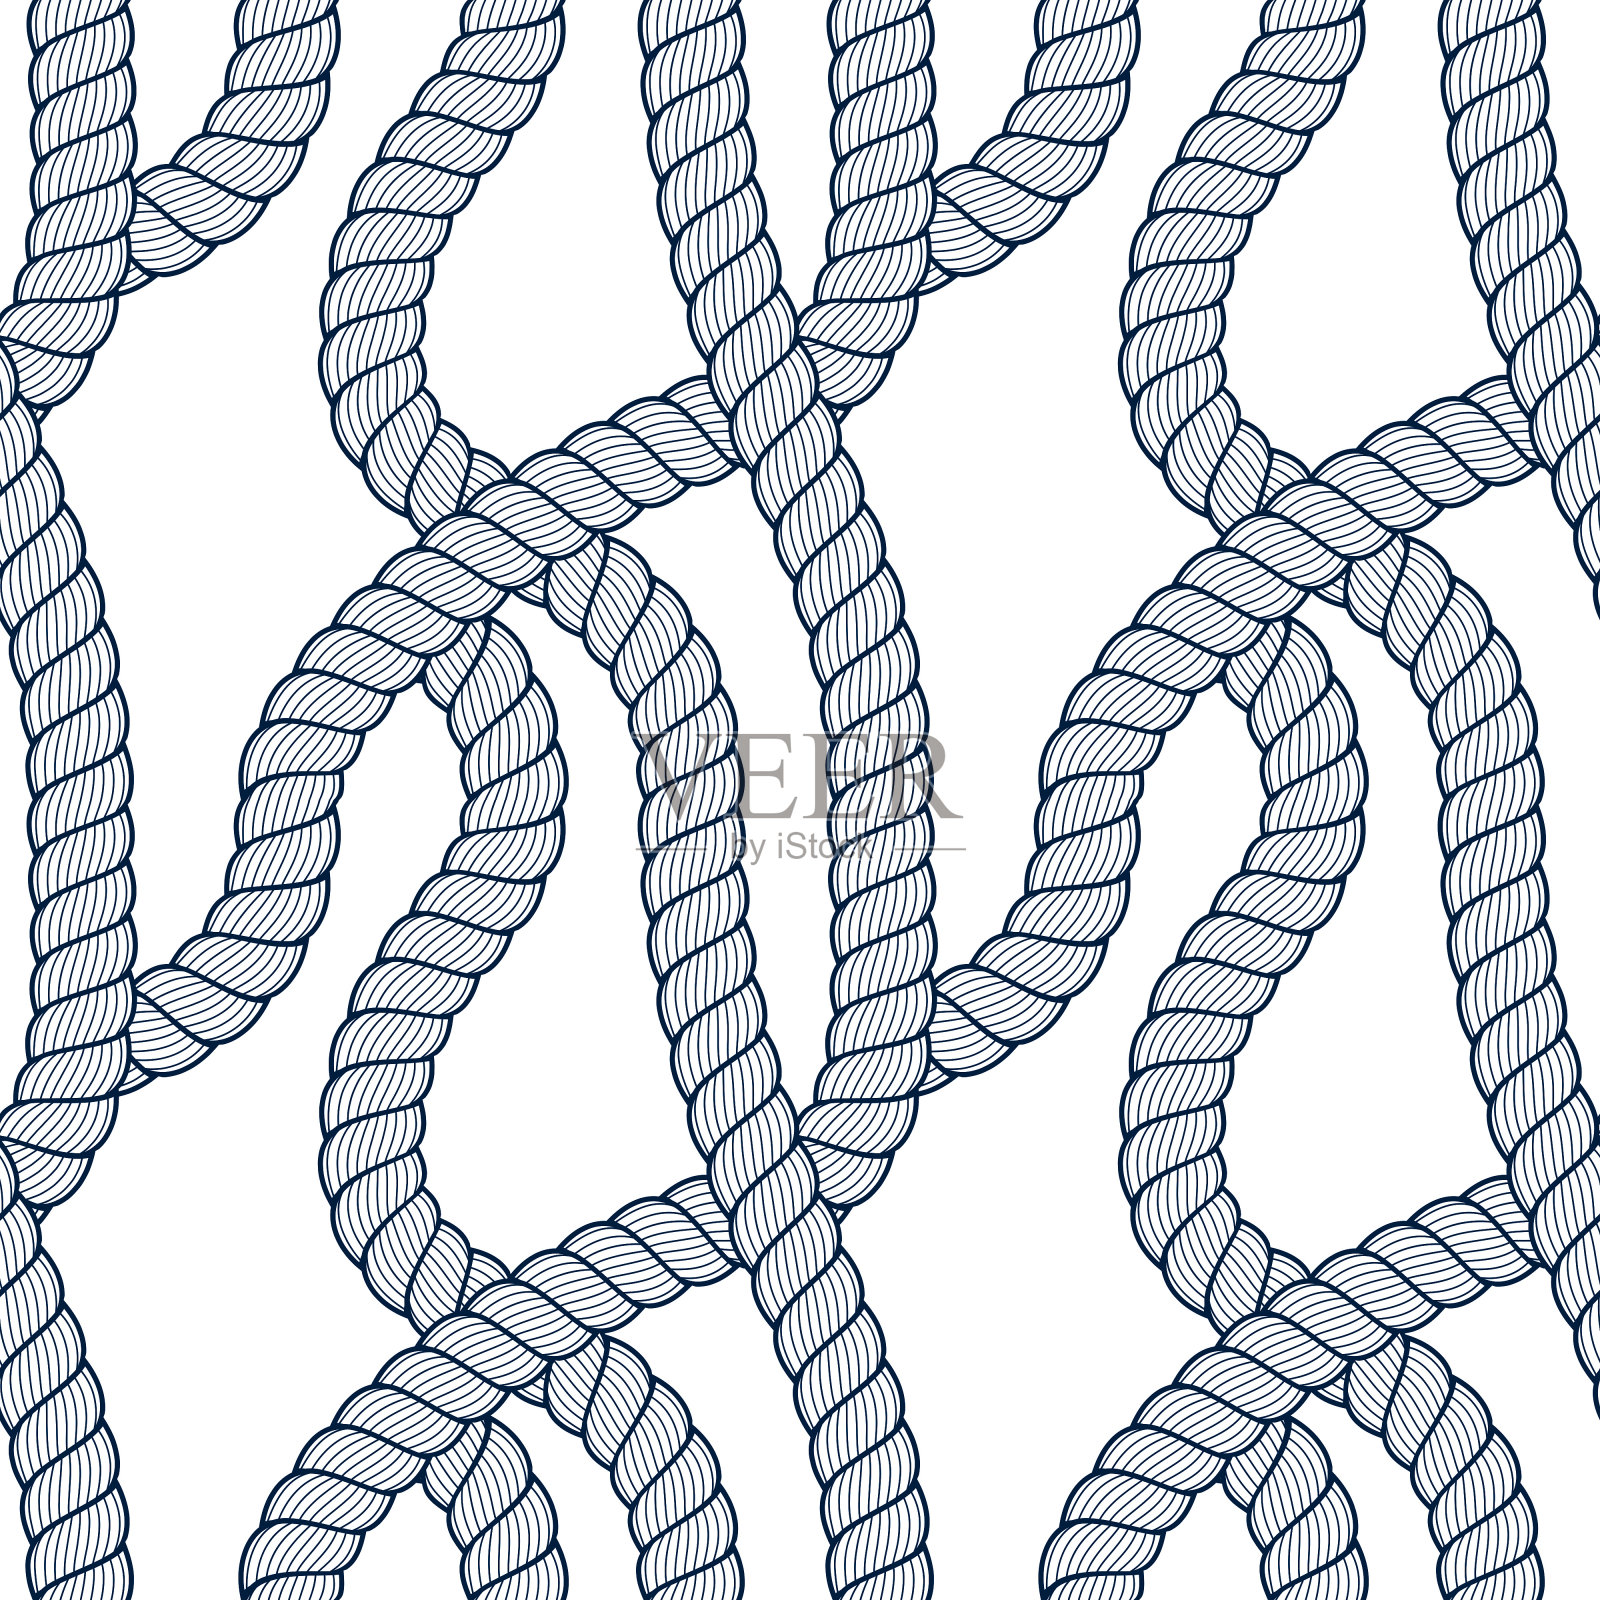 无缝绳纹编织矢量，抽象说明背景。海军缠绕的海洋绳索无尽设计。可用于织物，墙纸，包装，网和印刷。插画图片素材